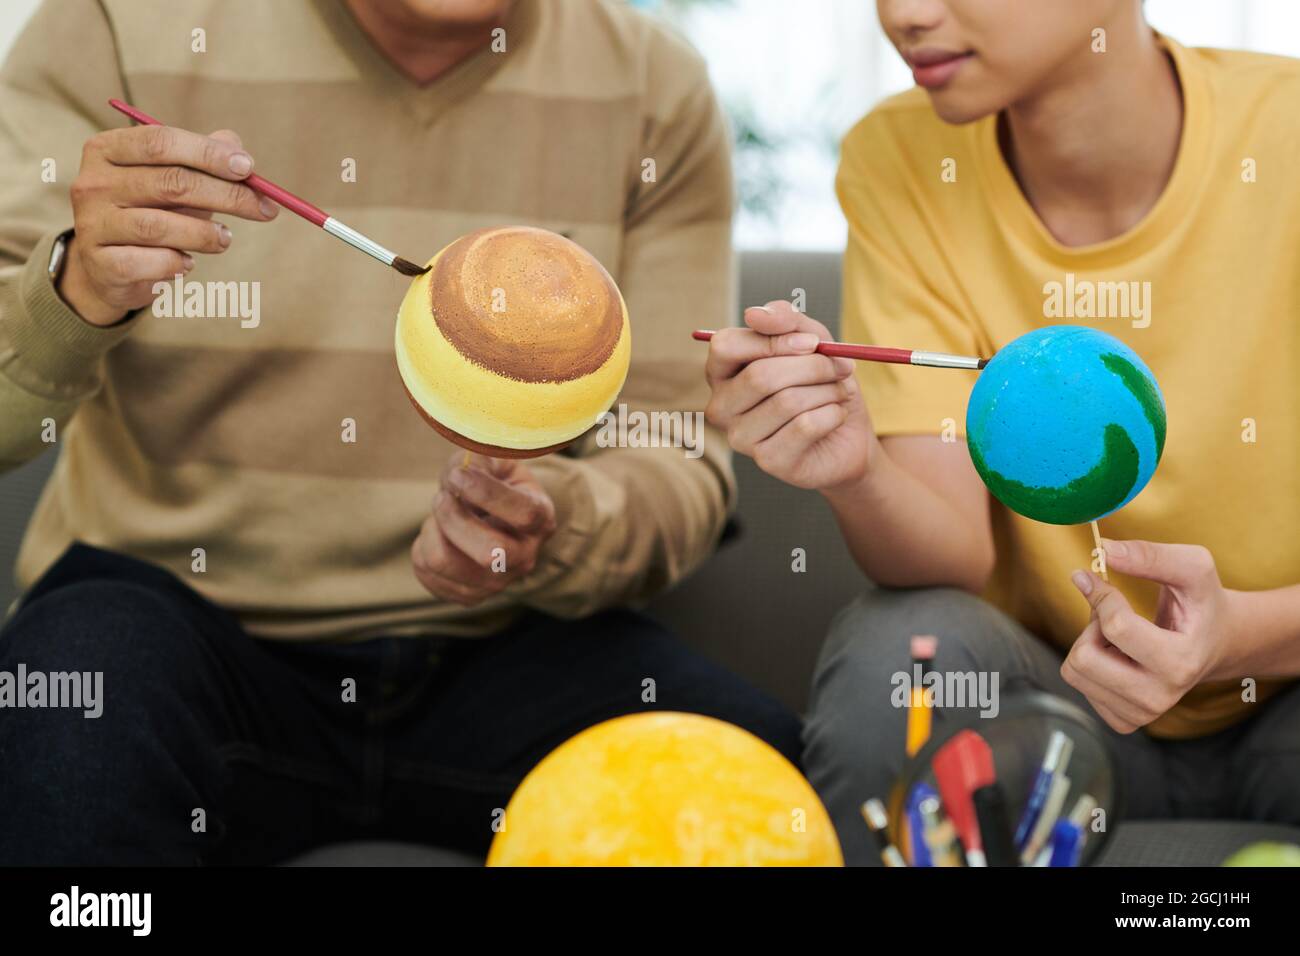 Père et fils peignant des boules en plastique lors de la fabrication du modèle de système solaire pour l'école Banque D'Images